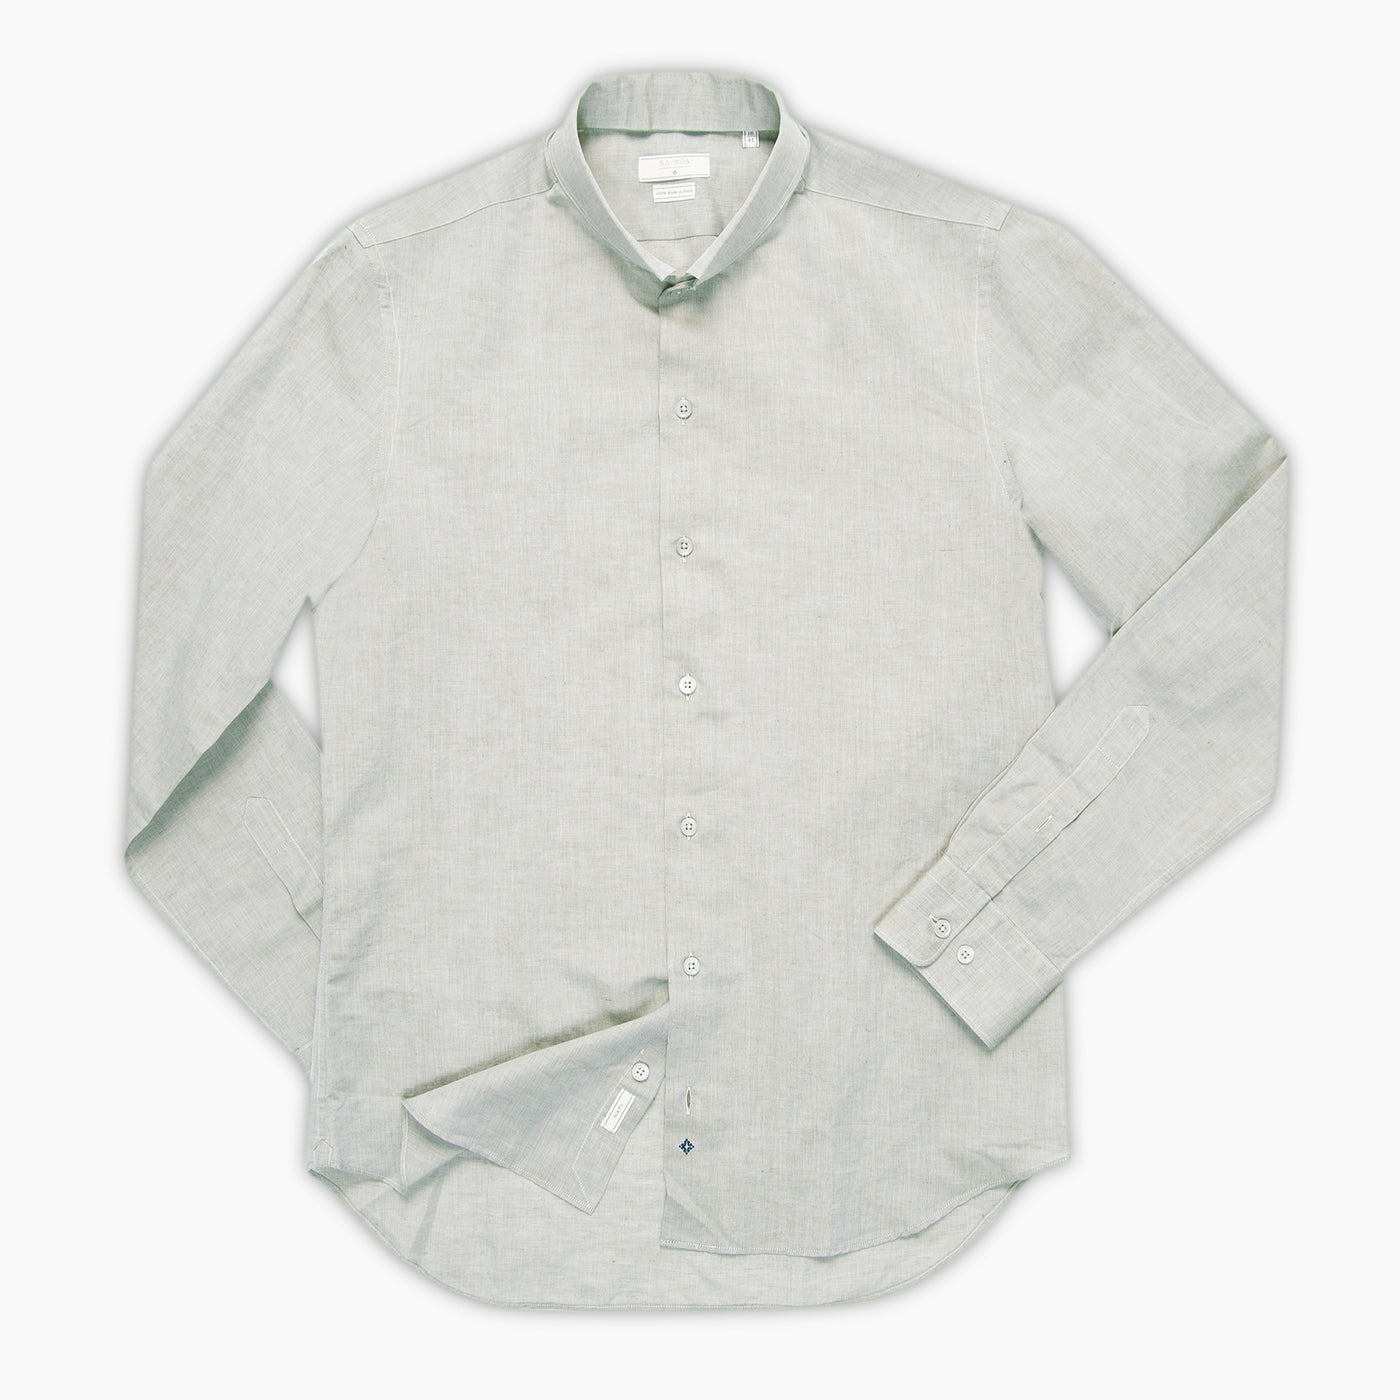 Conrad shirt in Flame Cotton/Linen